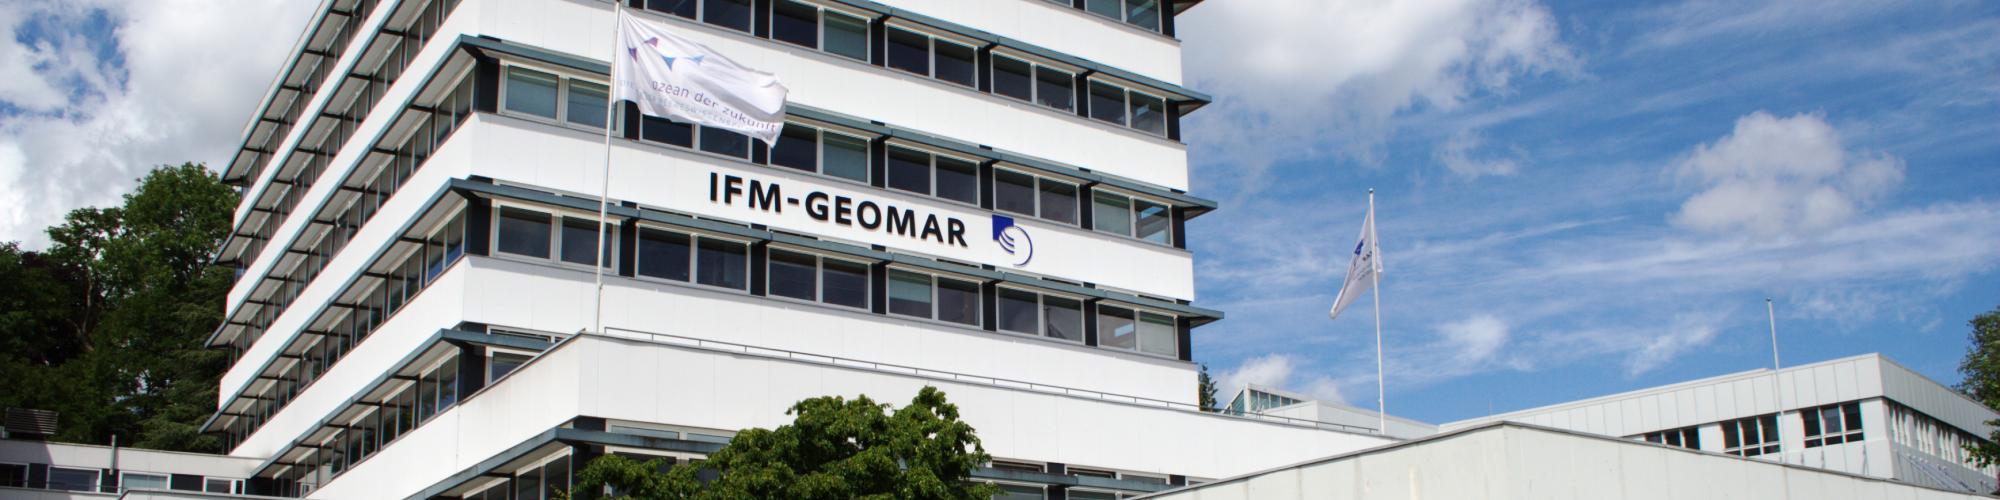 GEOMAR Helmholtz-Zentrum für Ozeanforschung Kiel